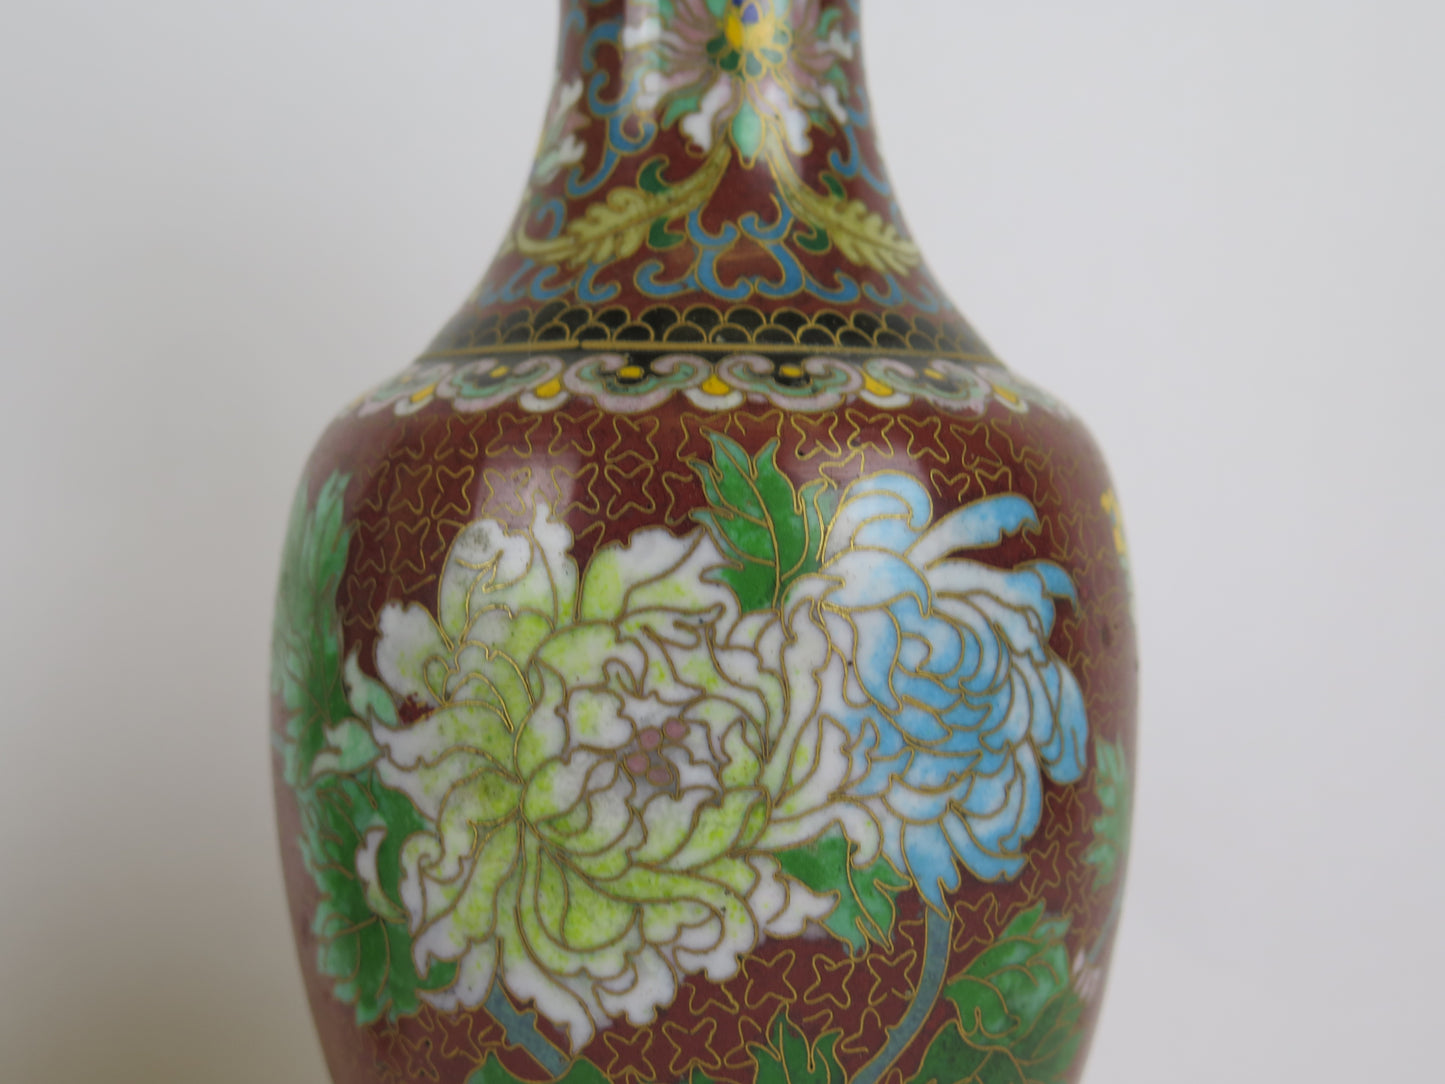 Coppia vasi cloisonnè vintage Cina Asia vaso per fiori floreale CM1